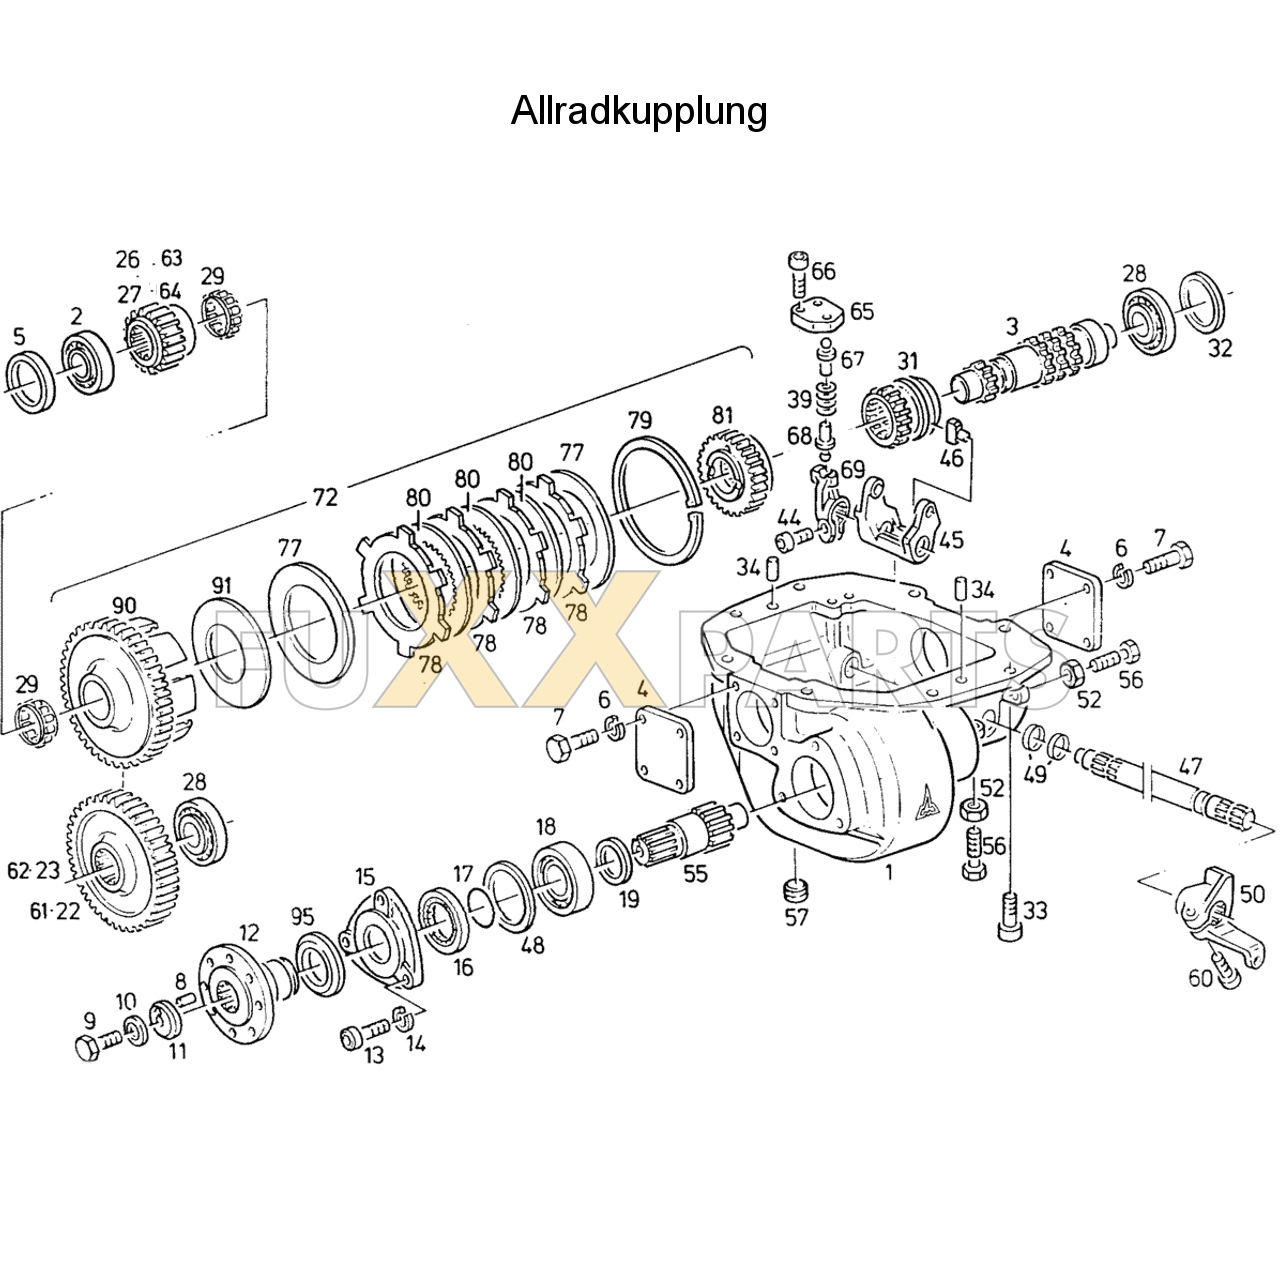 D 6807 Allradkupplung